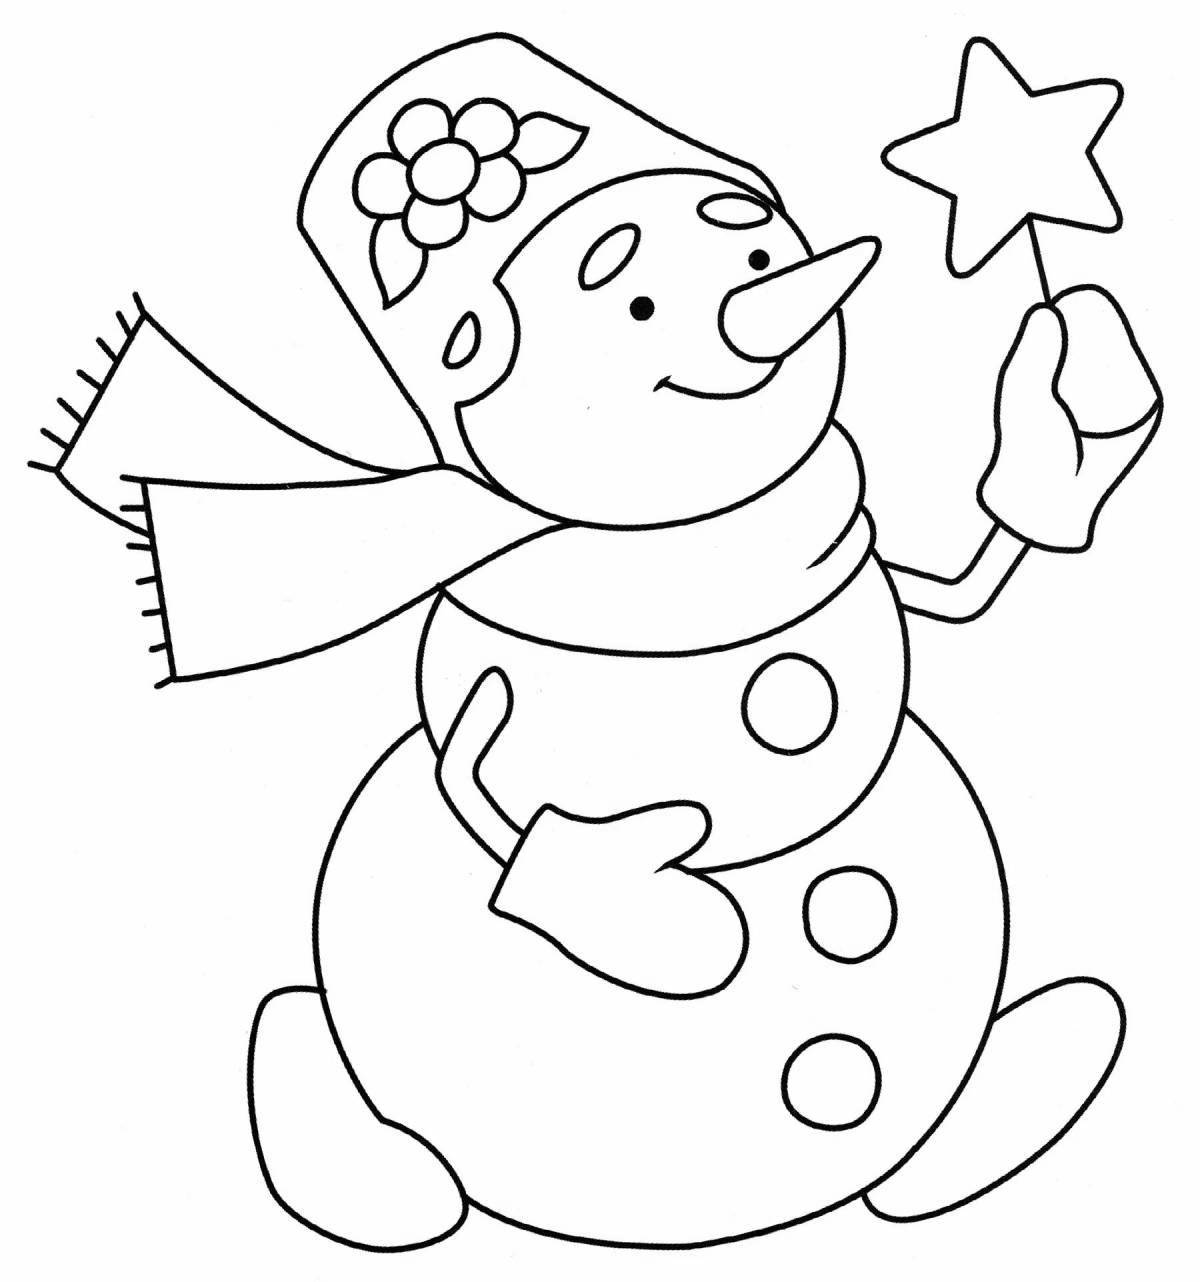 Праздничная детская раскраска снеговик